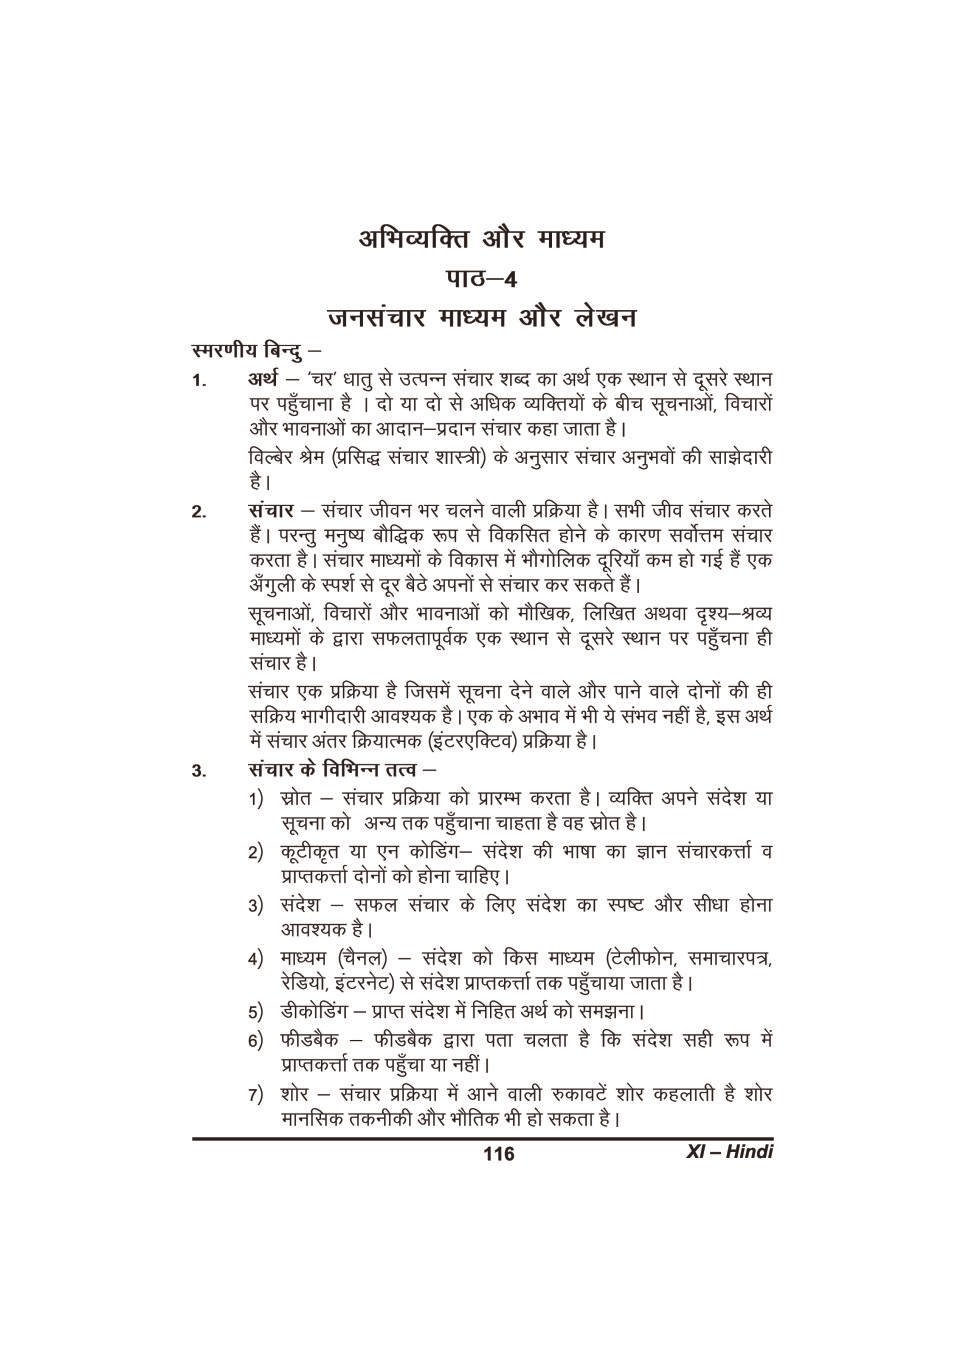 कक्षा 11 हिंदी के नोट्स - जनसंचार माध्यम और लेखन - Page 1